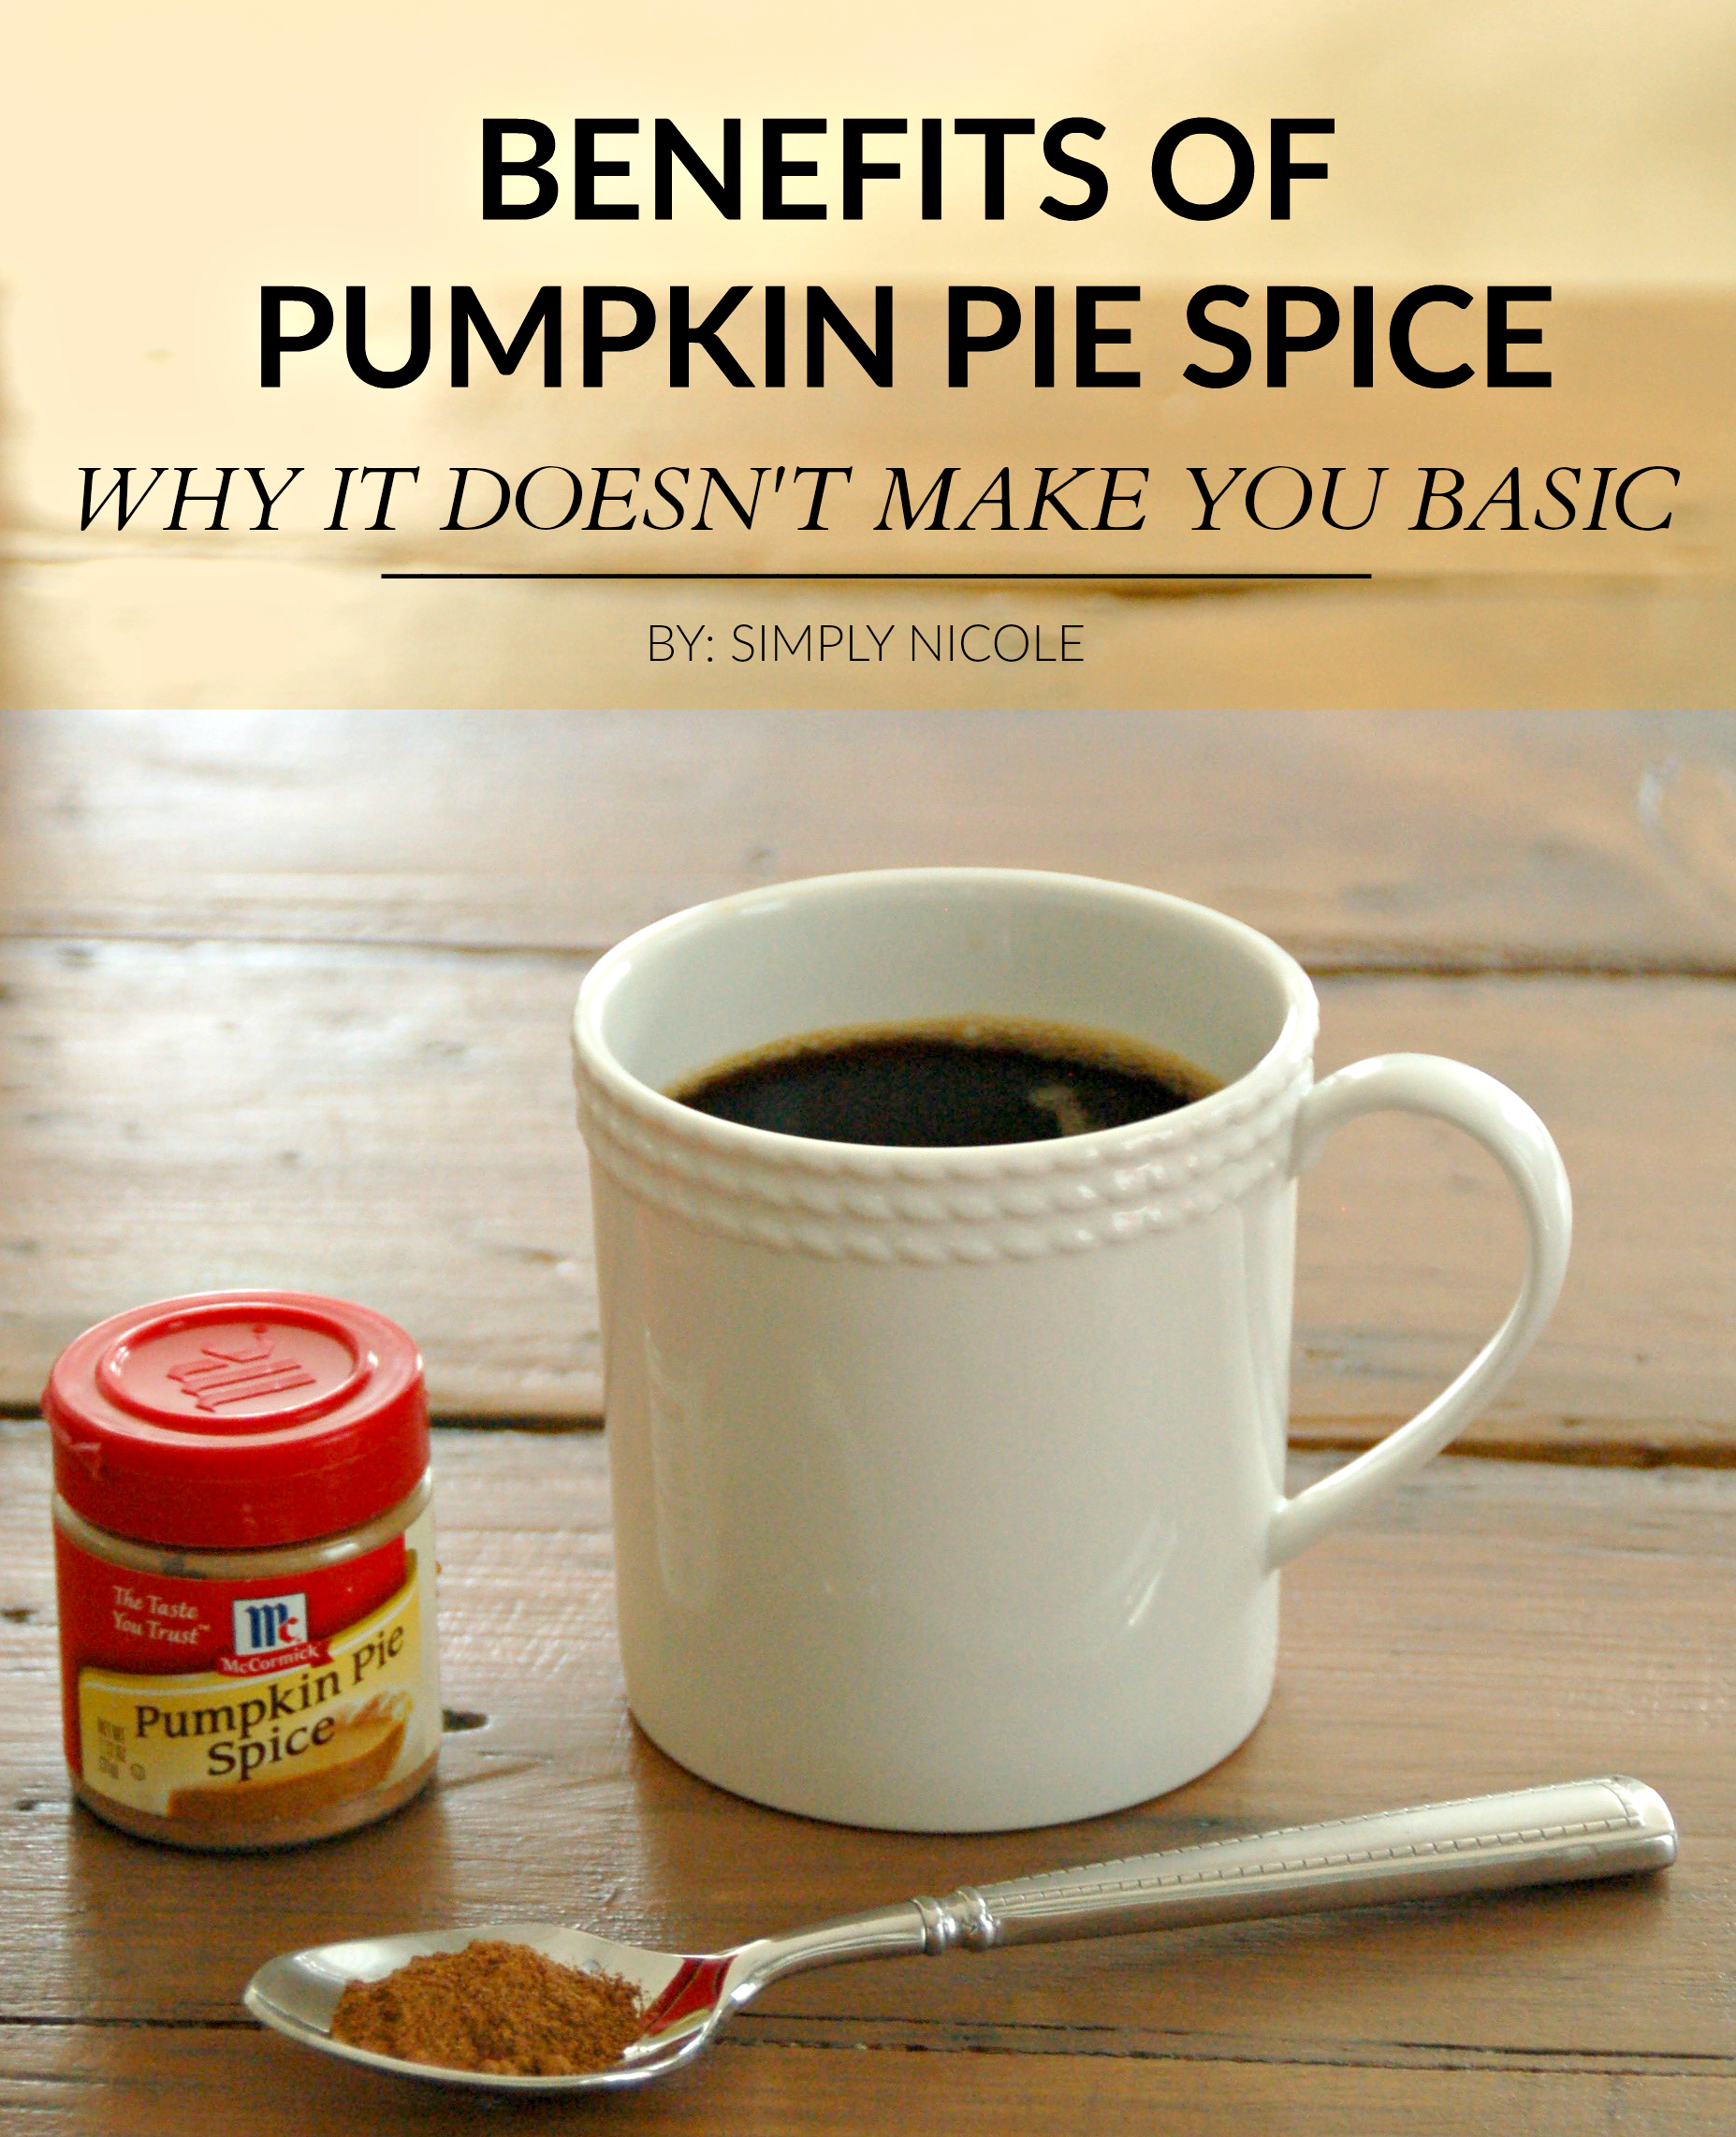 Benefits of Pumpkin Pie Spice